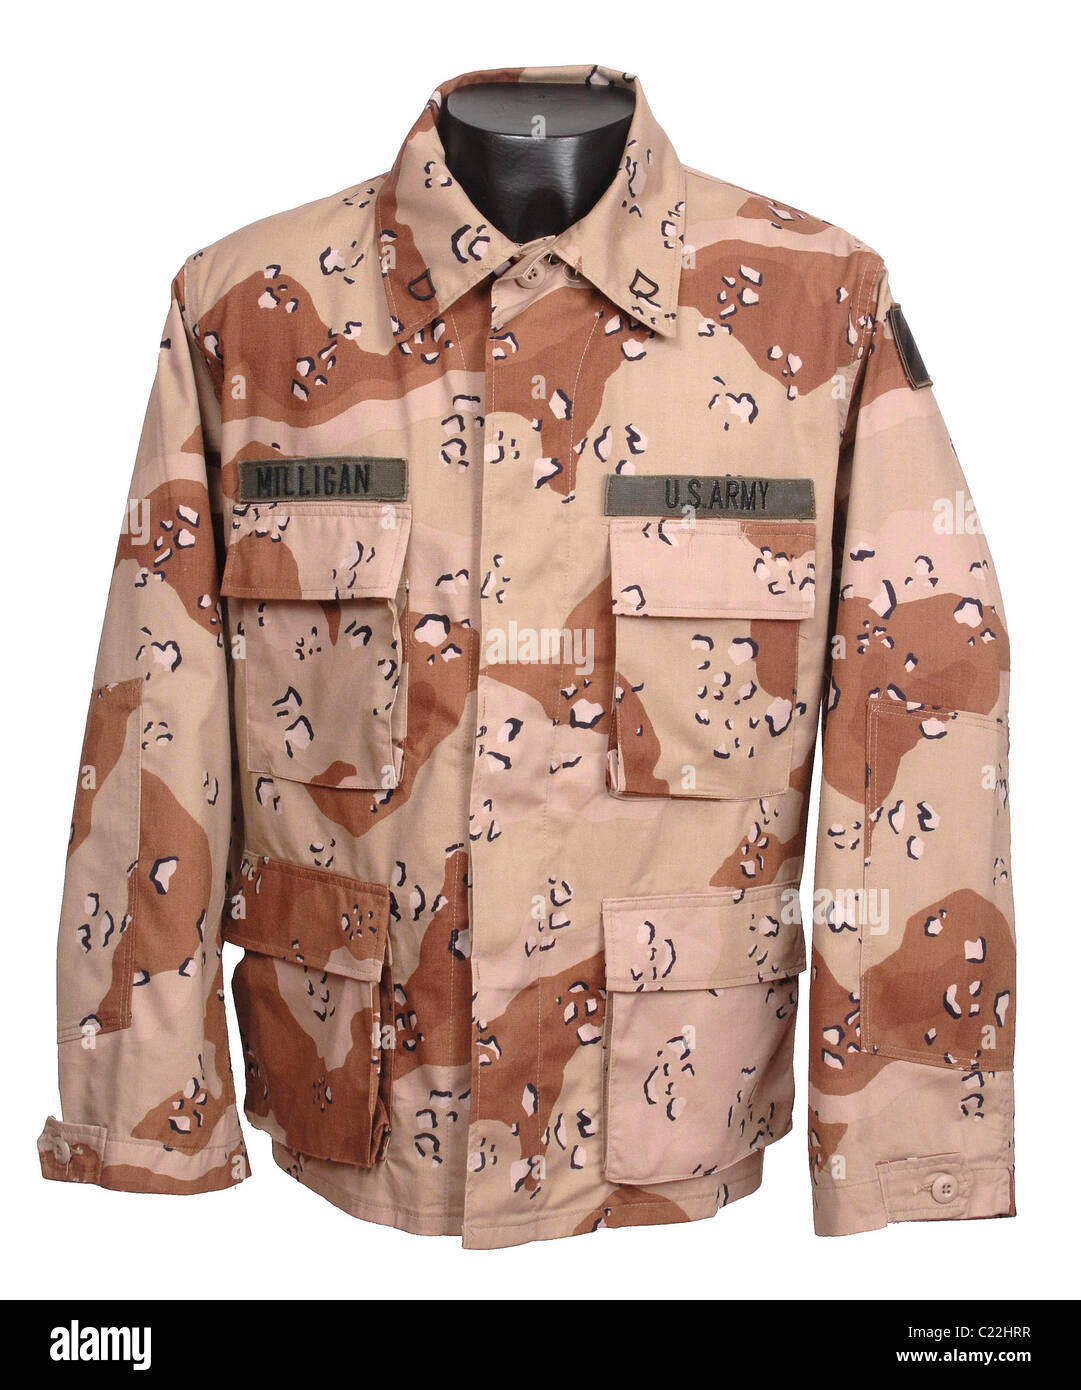 Deserto Choc-Chip battaglia abito DBDU uniforme camouflage tunica utilizzato in Iraq Foto Stock